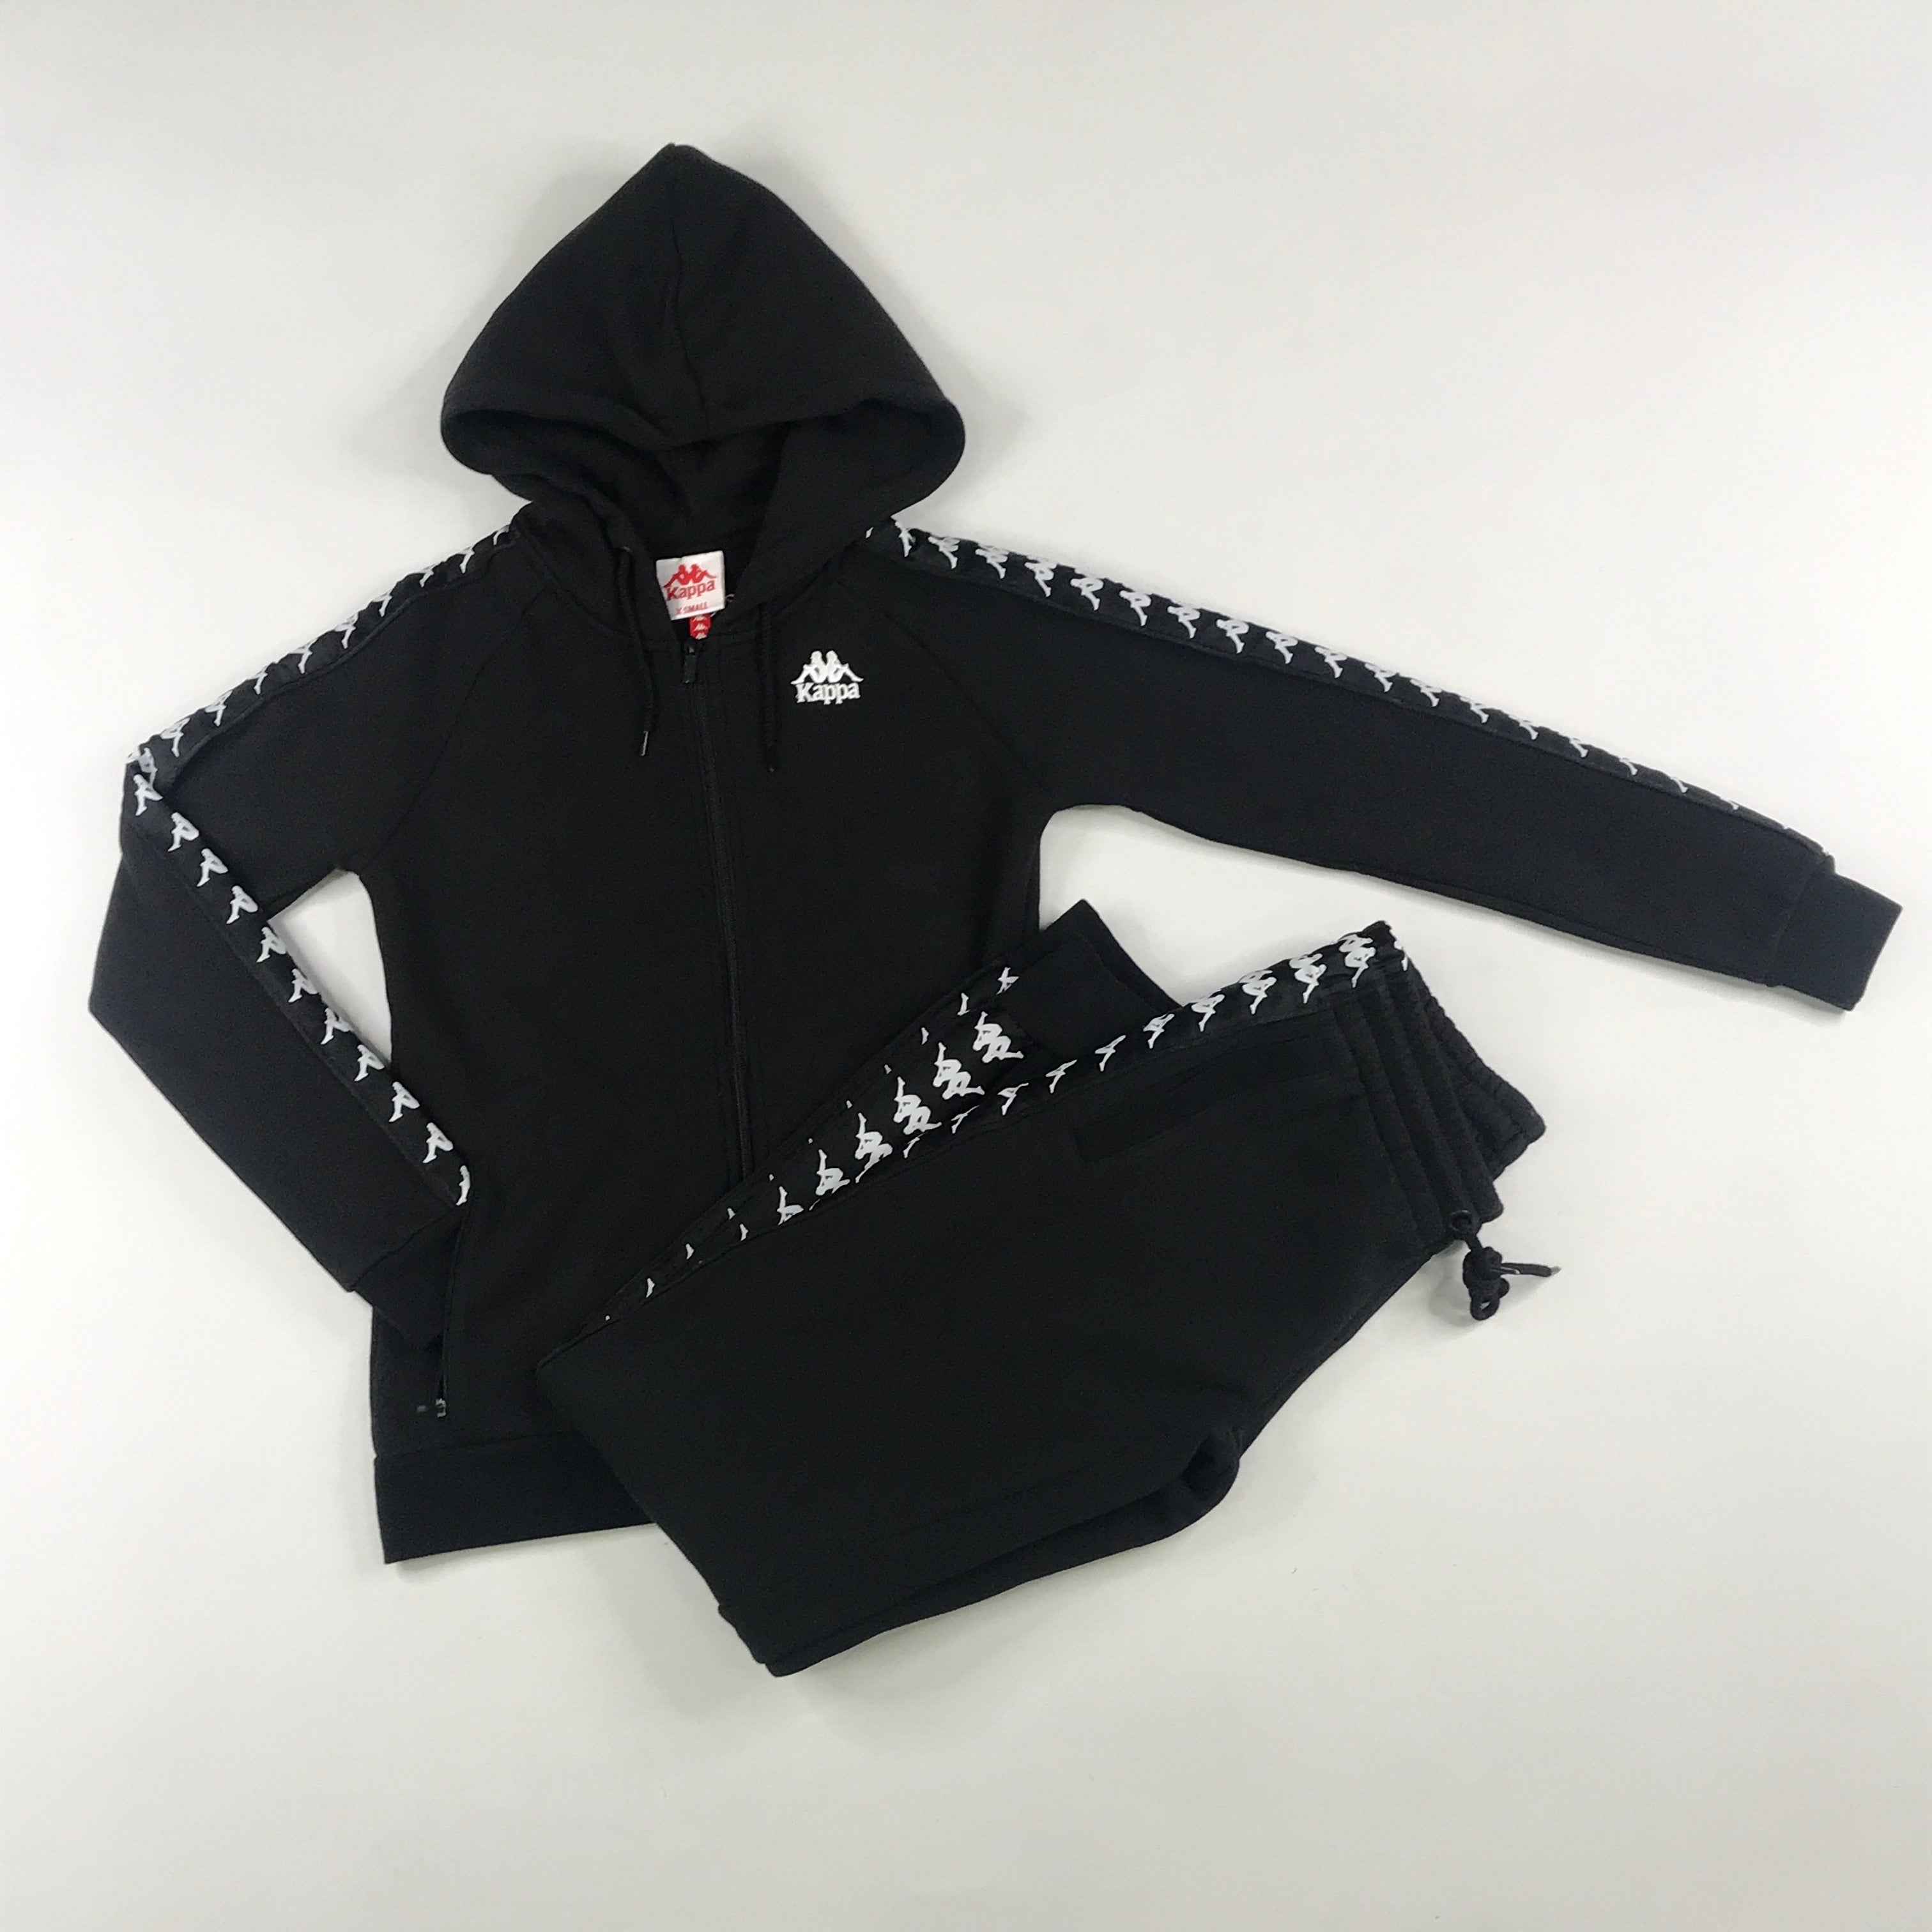 Kappa 222 Banda Balzi 2 hoodie set in black-white